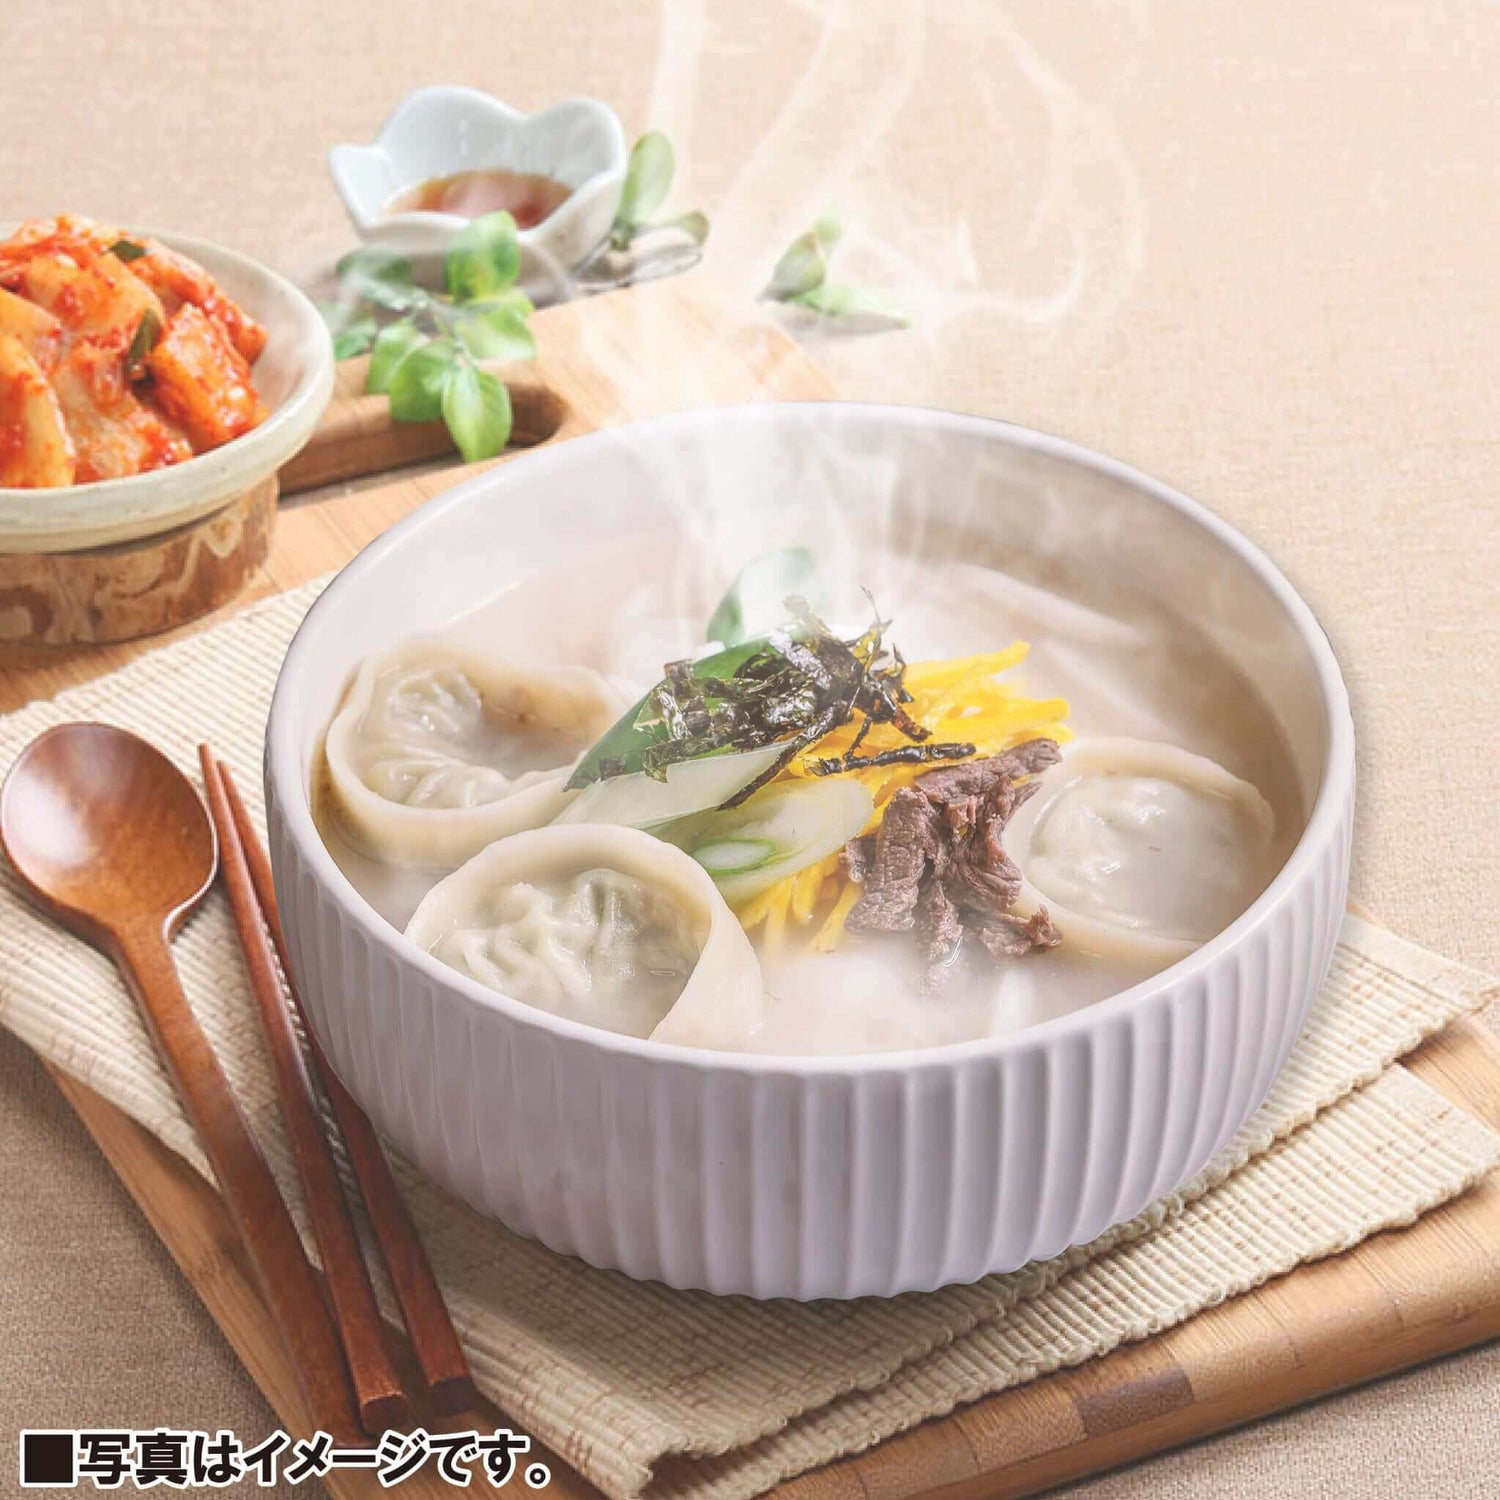 マンドゥ(韓国式餃子)1.3kg - 韓国惣菜bibim'ネットストア